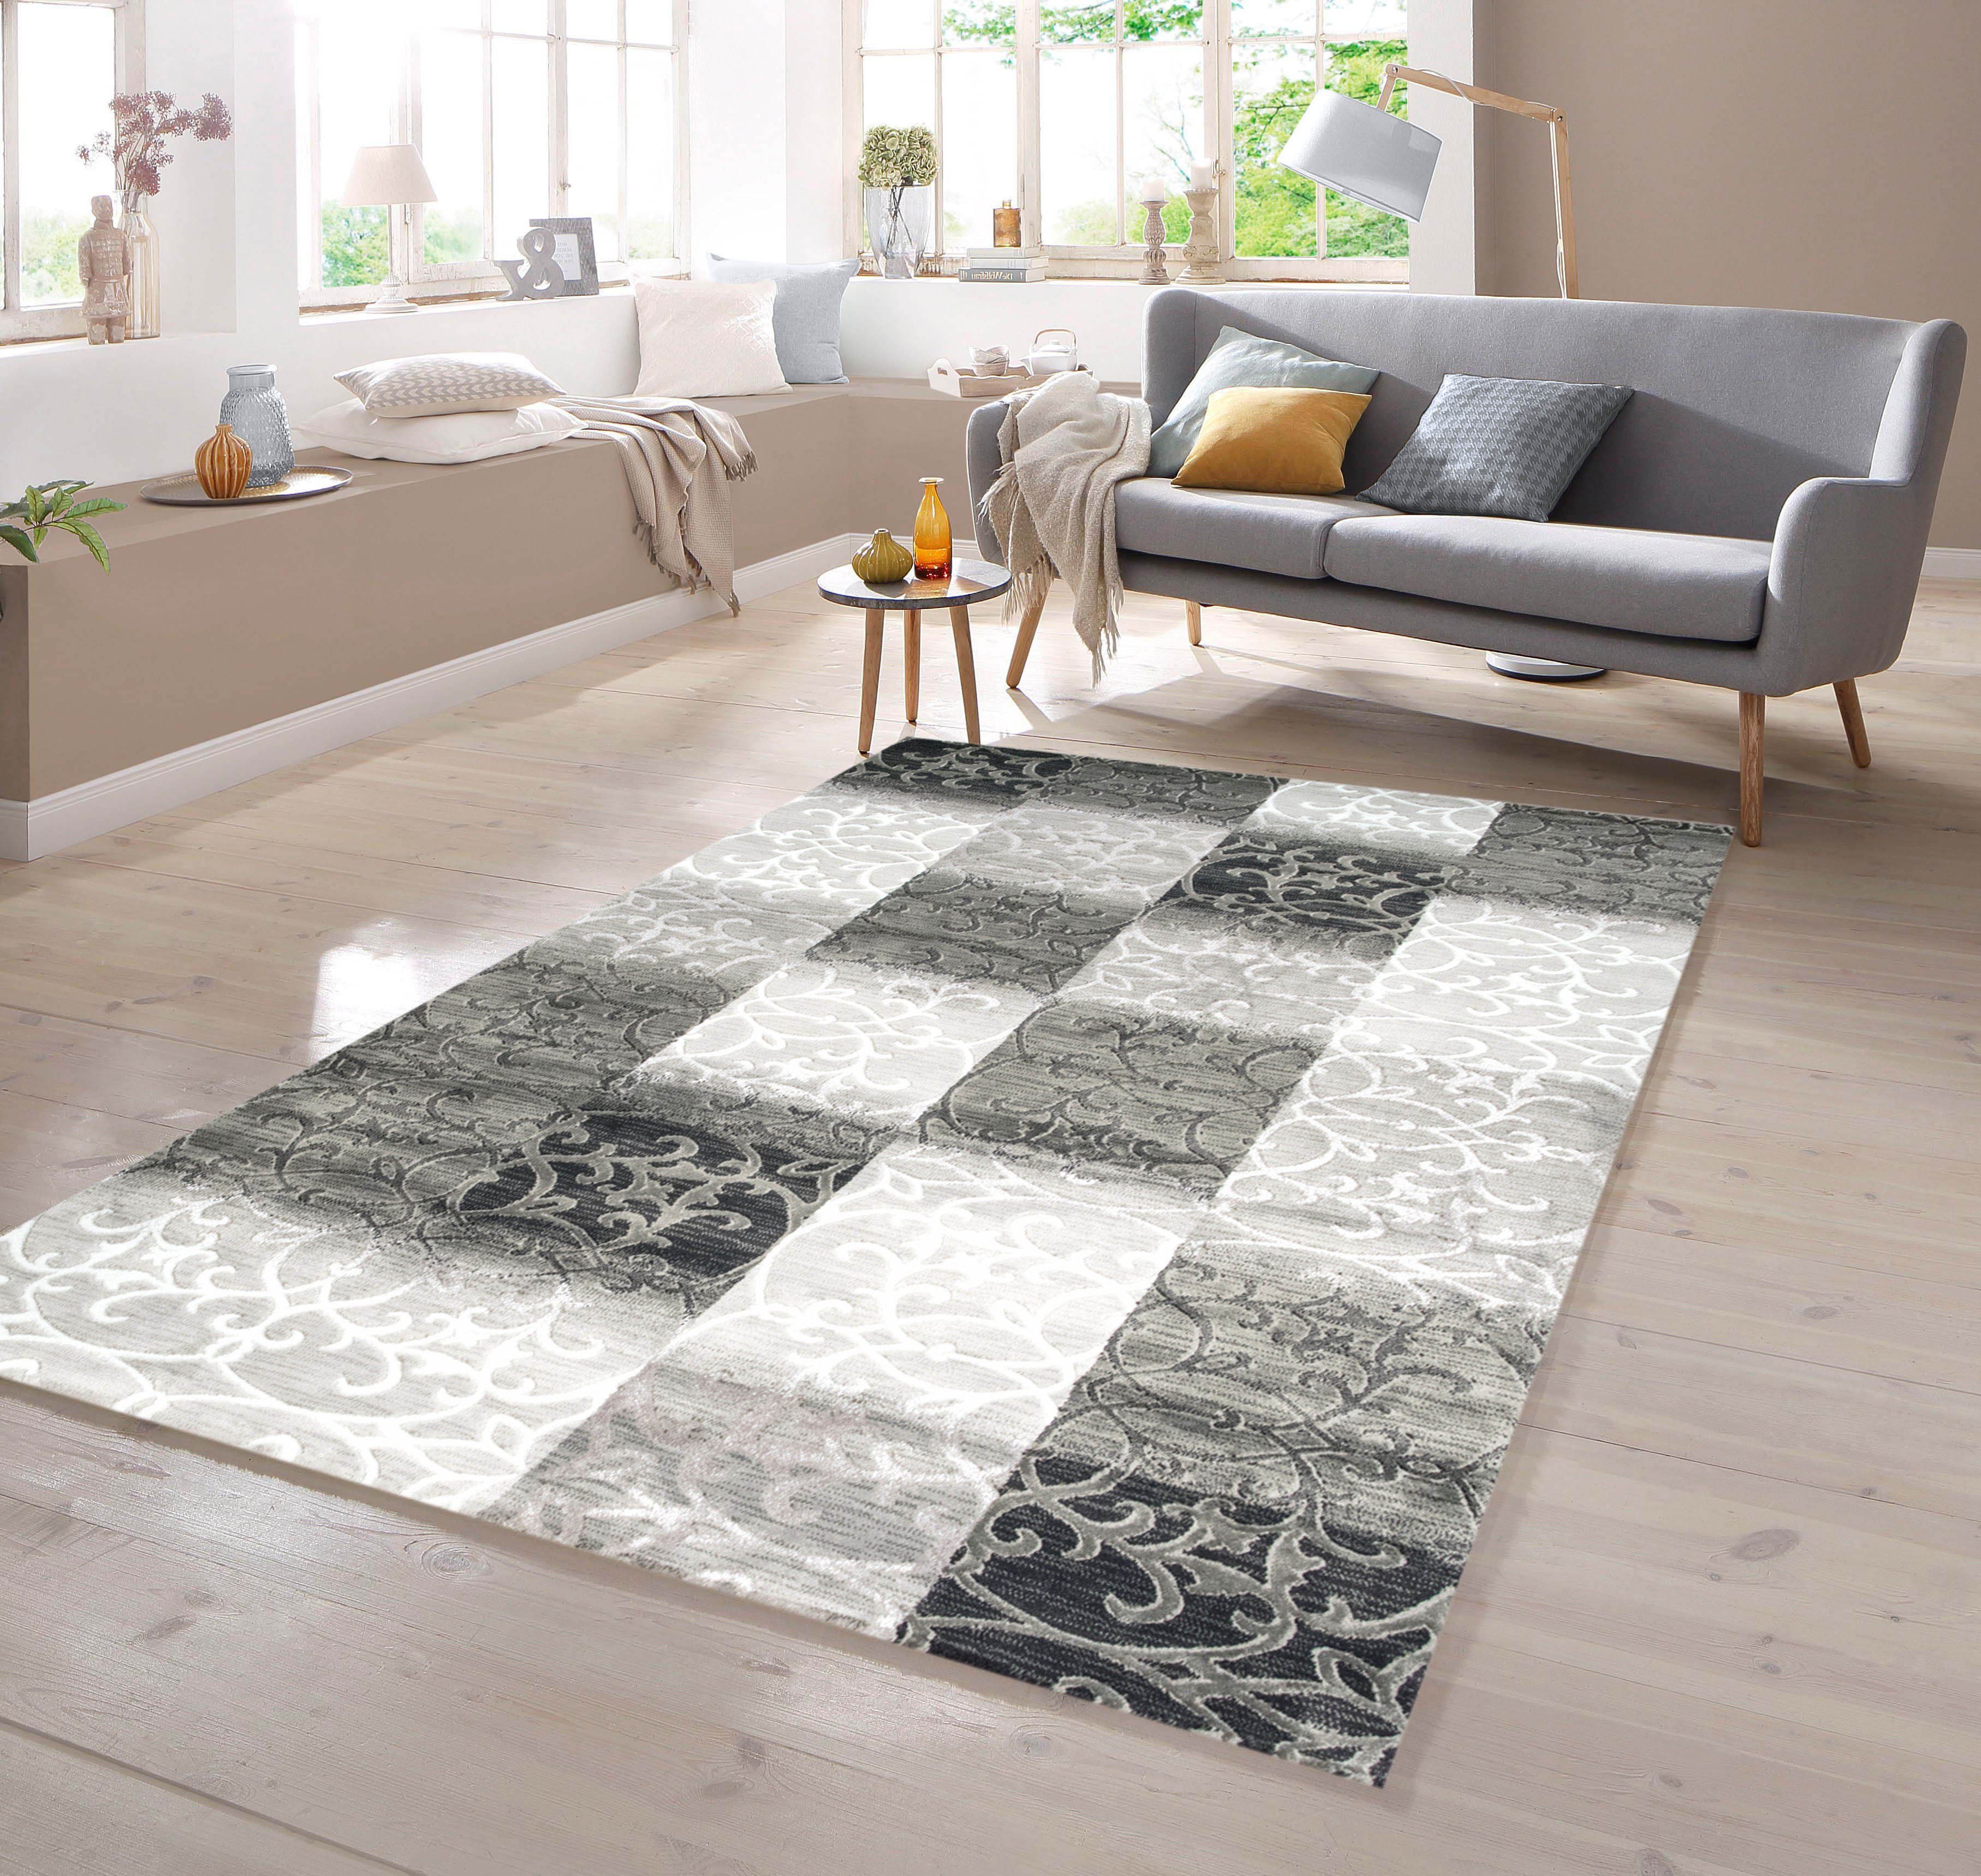 Teppich Designer Teppich mit Konturenschnitt Karo Muster Schwarz Weiß Grau, TeppichHome24, rechteckig